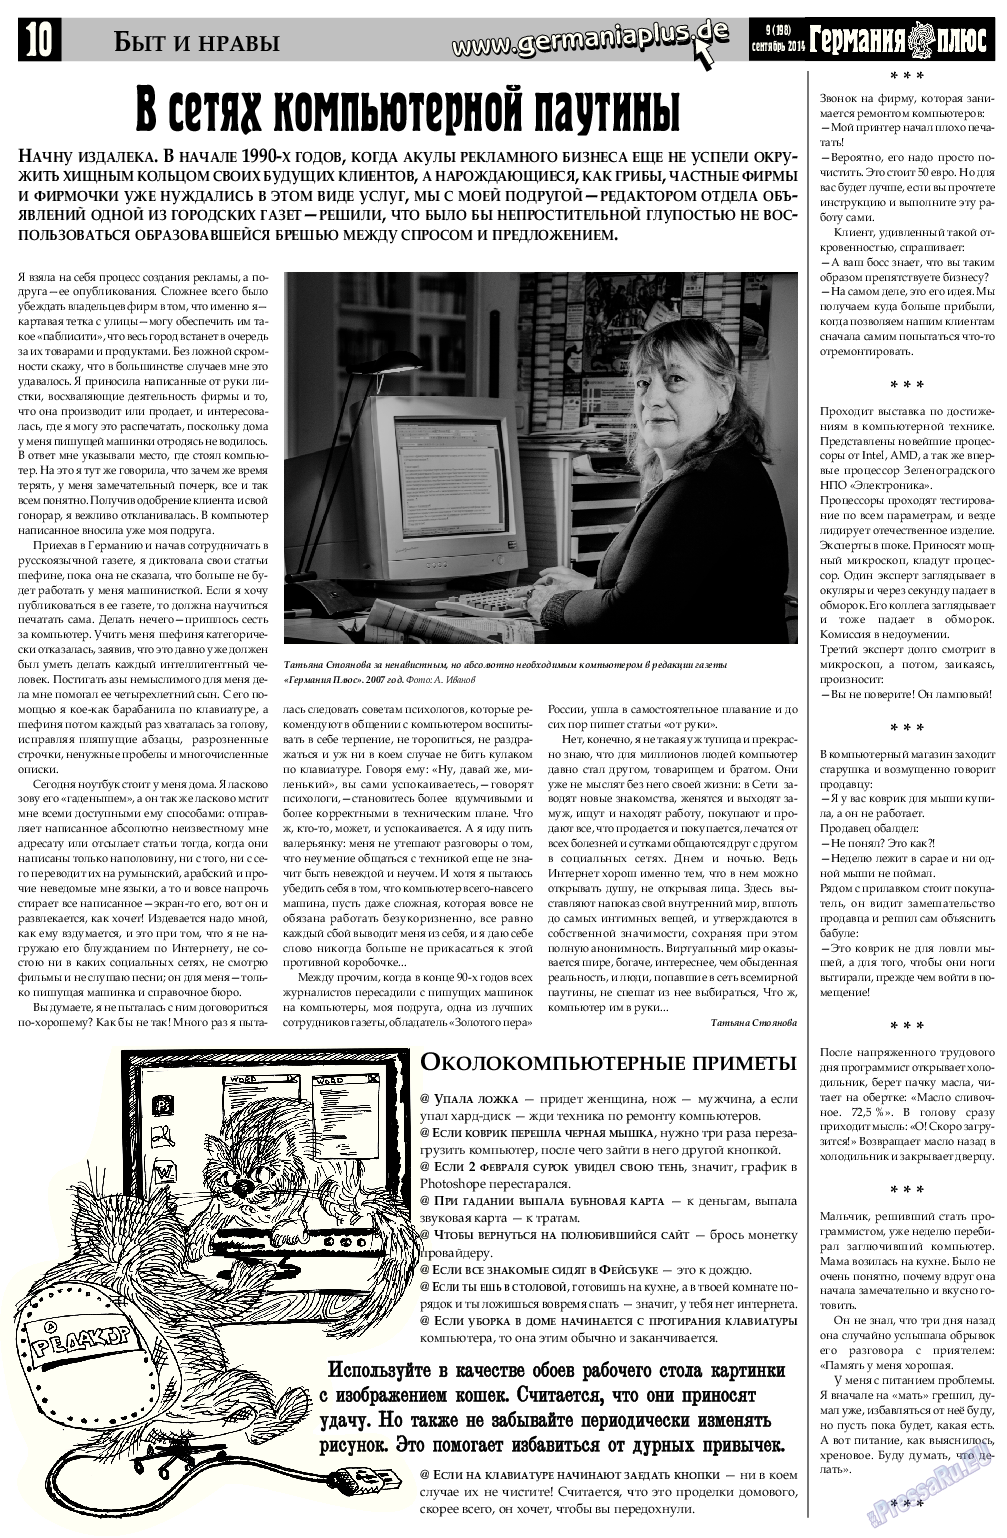 Германия плюс, газета. 2014 №8 стр.10